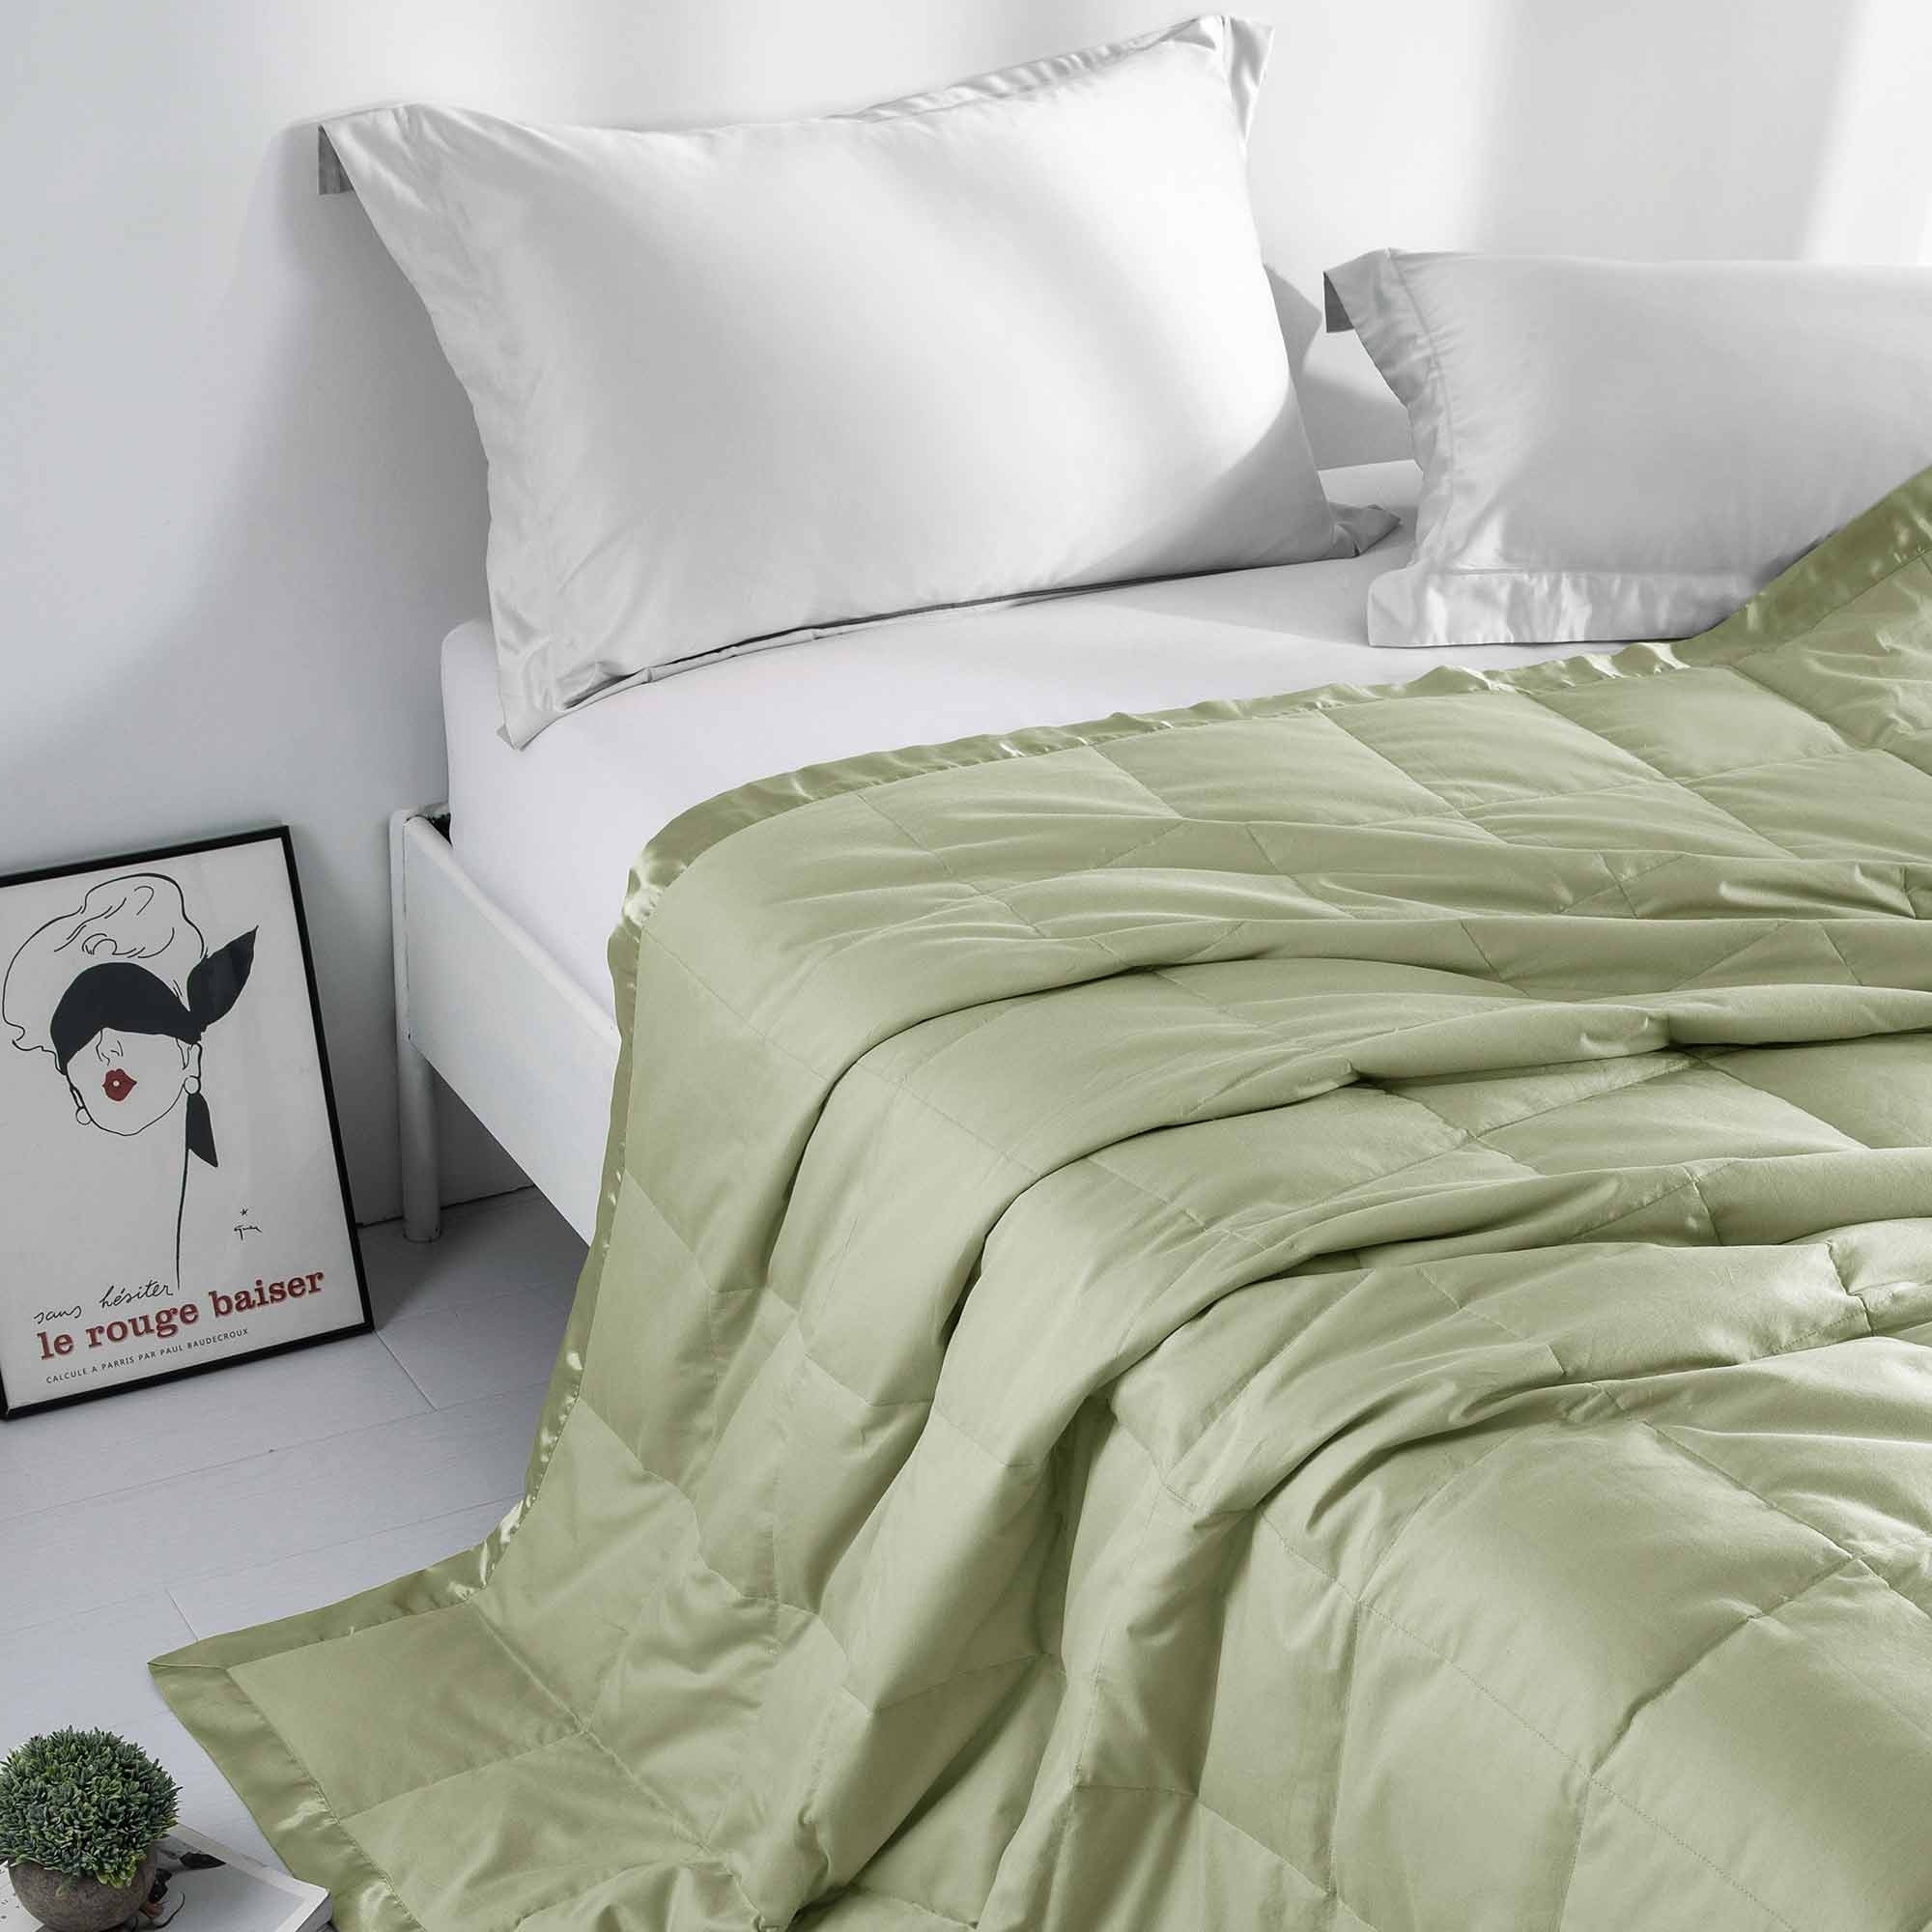 Cozy Soft Lightweight Oversized Down Blanket With Satin Trim, All Season Blanket, Sleep Essentials Versatile Blanket, 90 X90